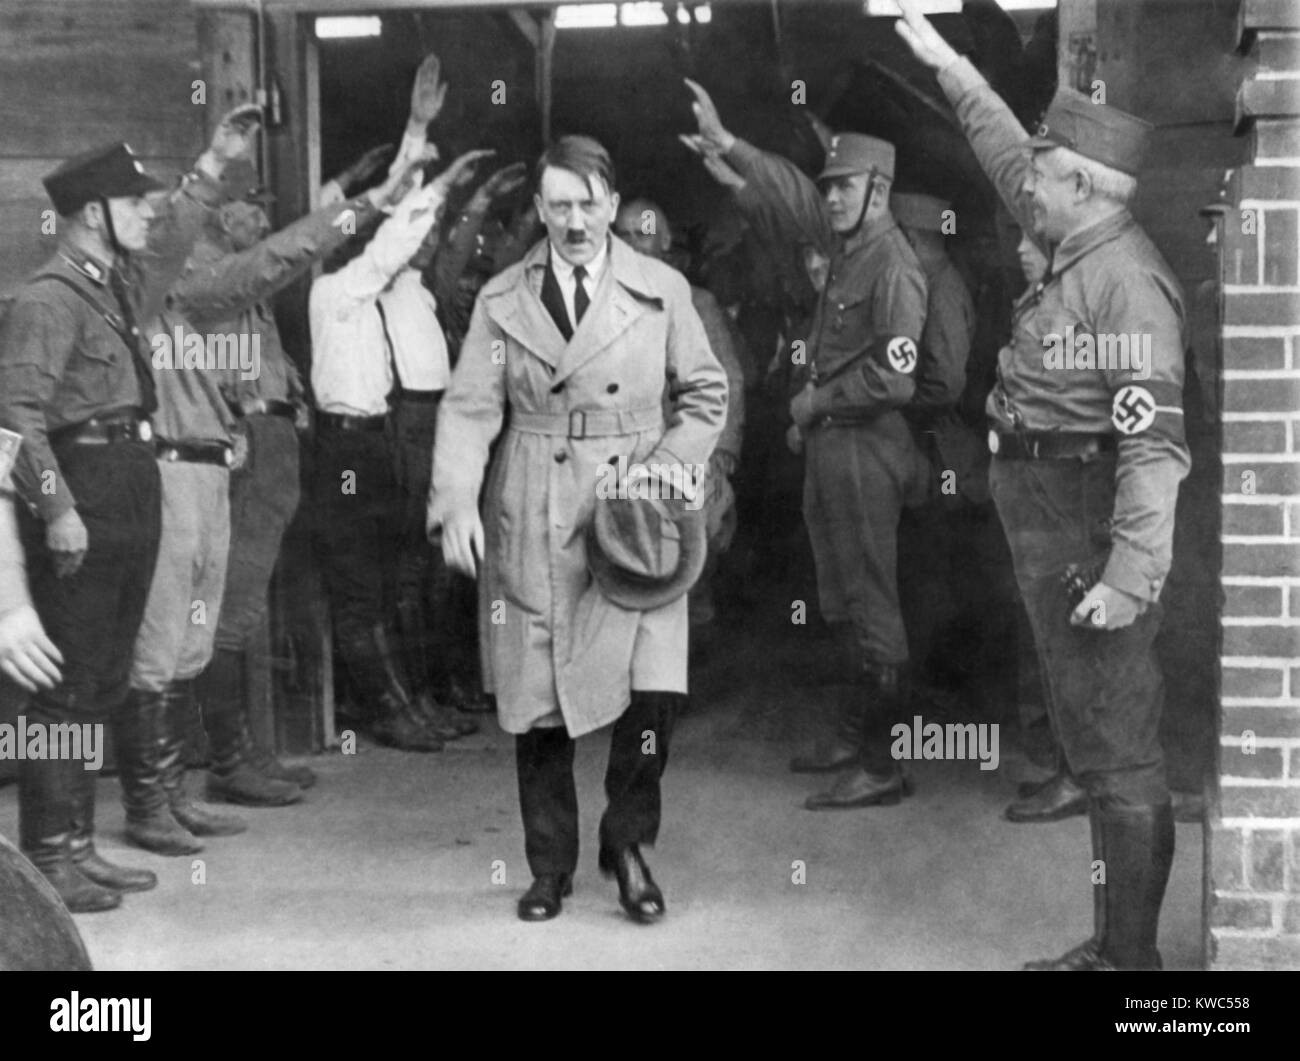 Adolf Hitler, qui sortent d'une réunion du parti nazi après un discours, 1930. Il est salué par des storm troopers. Hitler porte un tailleur sous son trench-coat, suggérant la photo a été prise au début de sa chancellerie. (BSLOC   2015 13 54) Banque D'Images